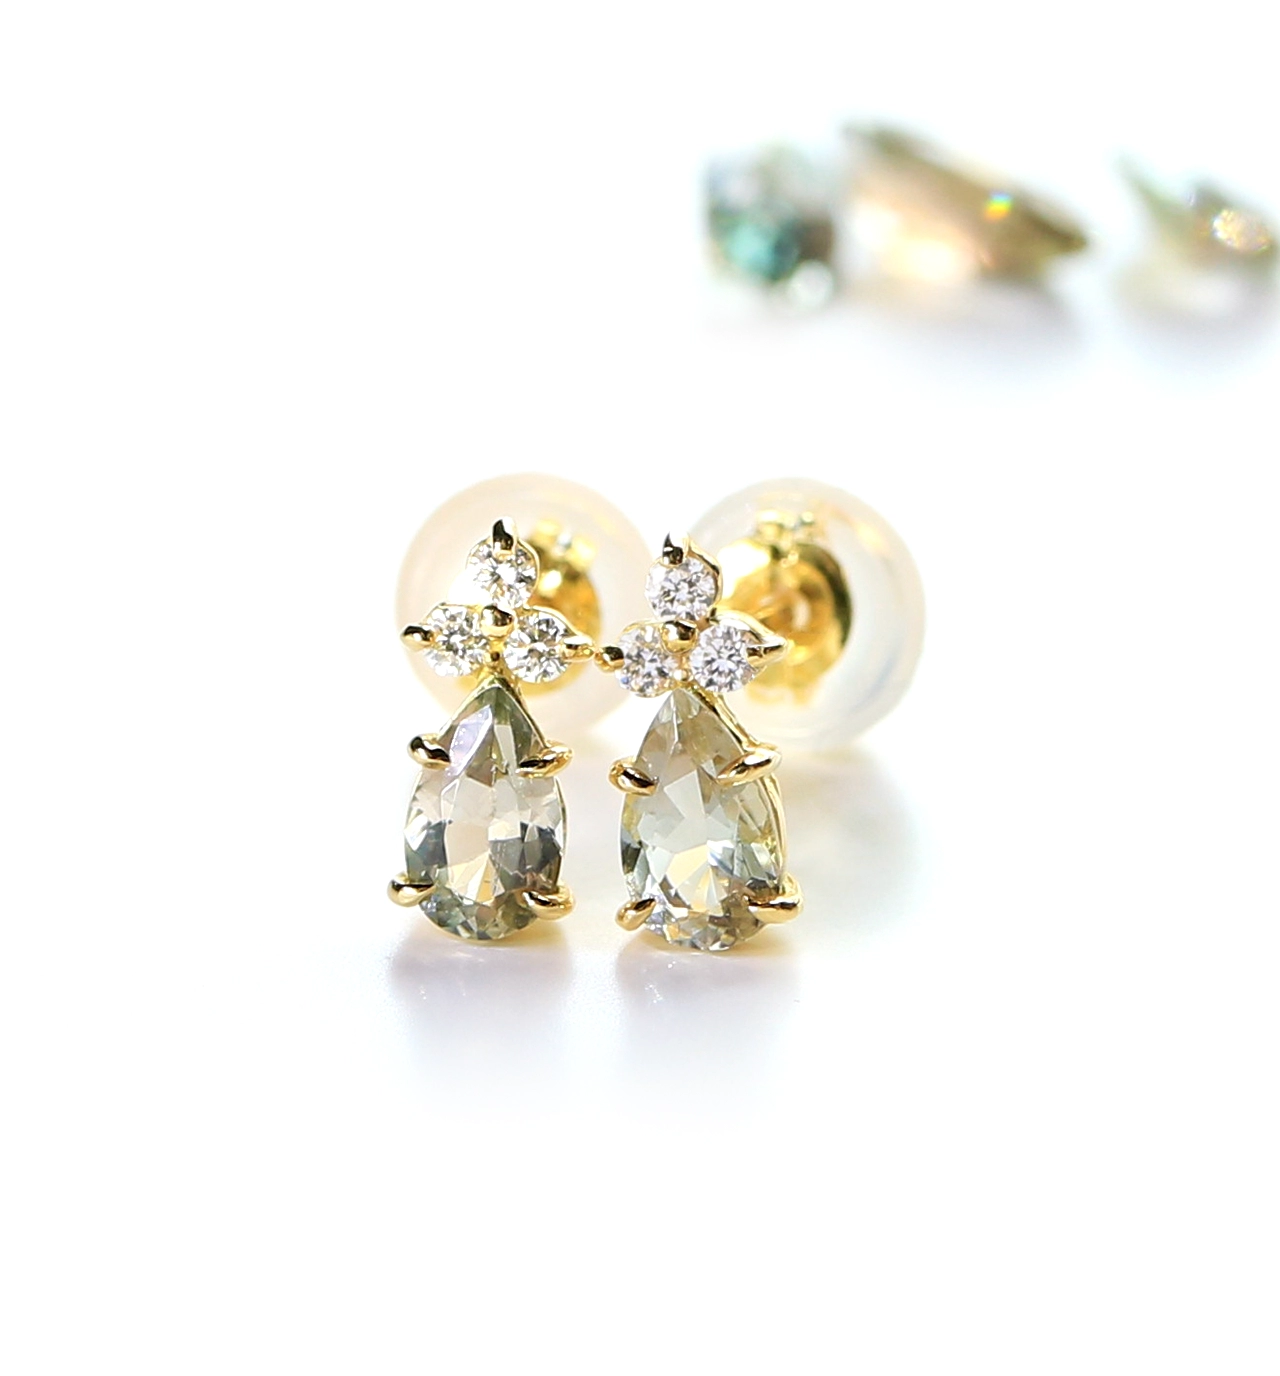 K18 オレゴンサンストーン(淡緑カラー)＆ダイヤモンドのポストピアス ~Ello Lilas~ ジュエリーブランド「RASPIA Jewelry」